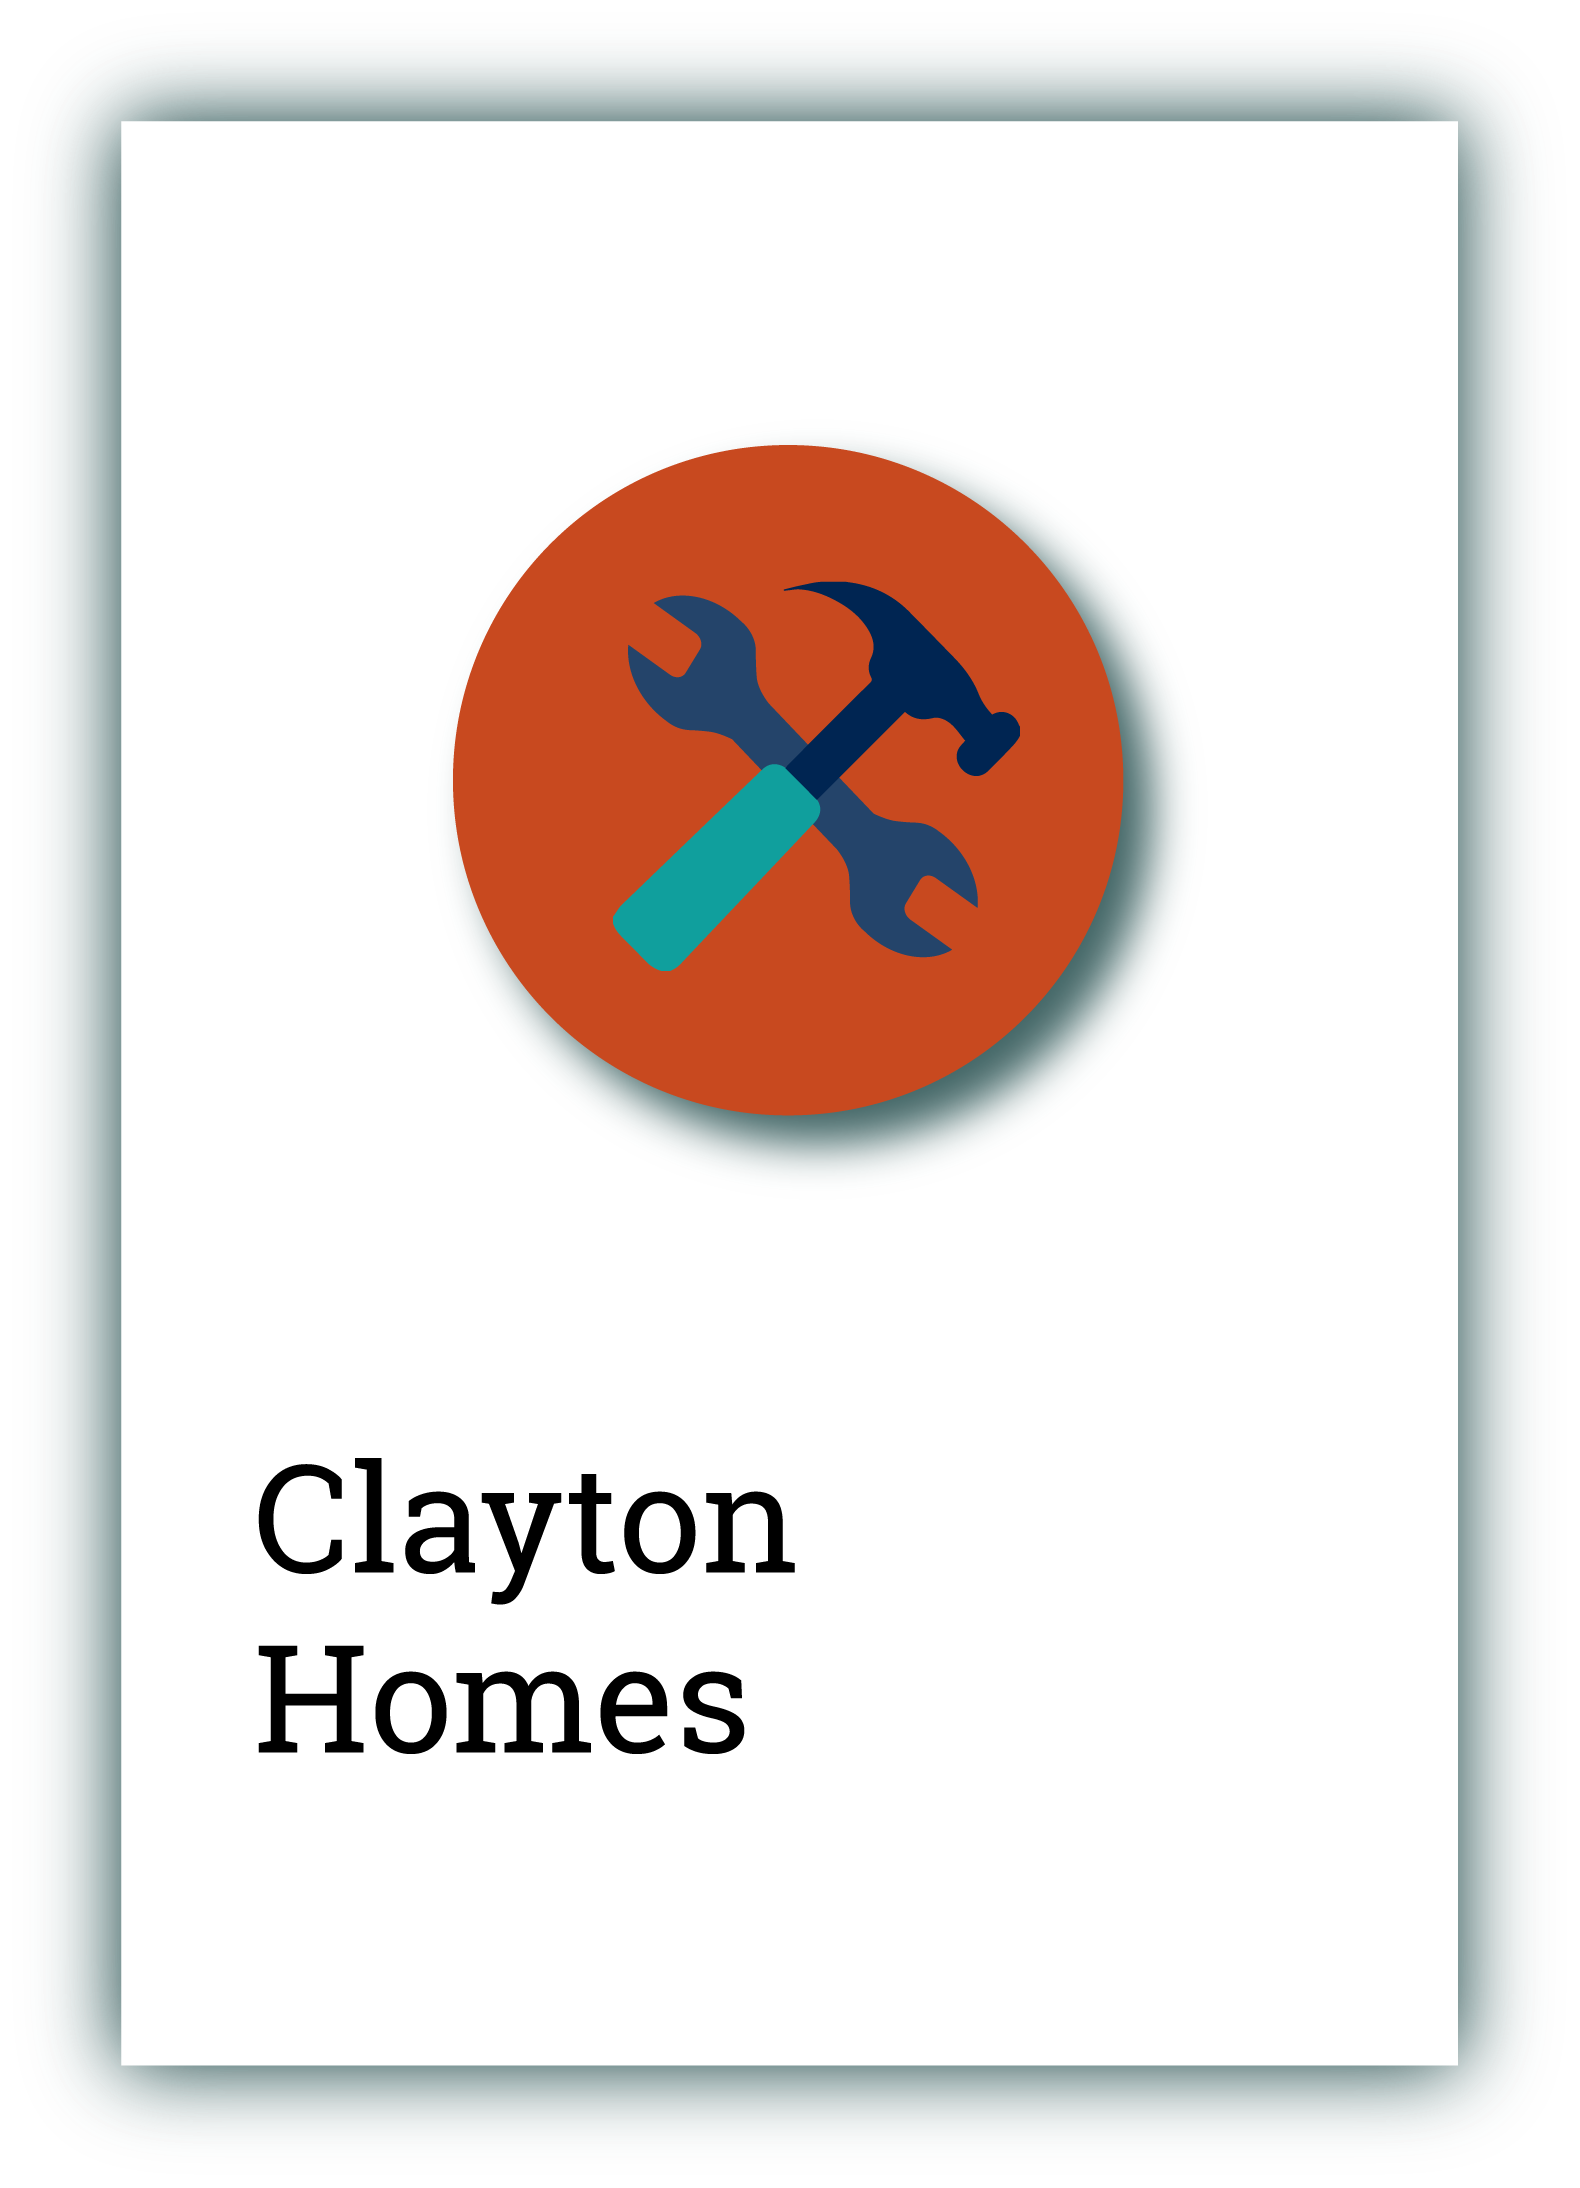 Clayton Homes 2